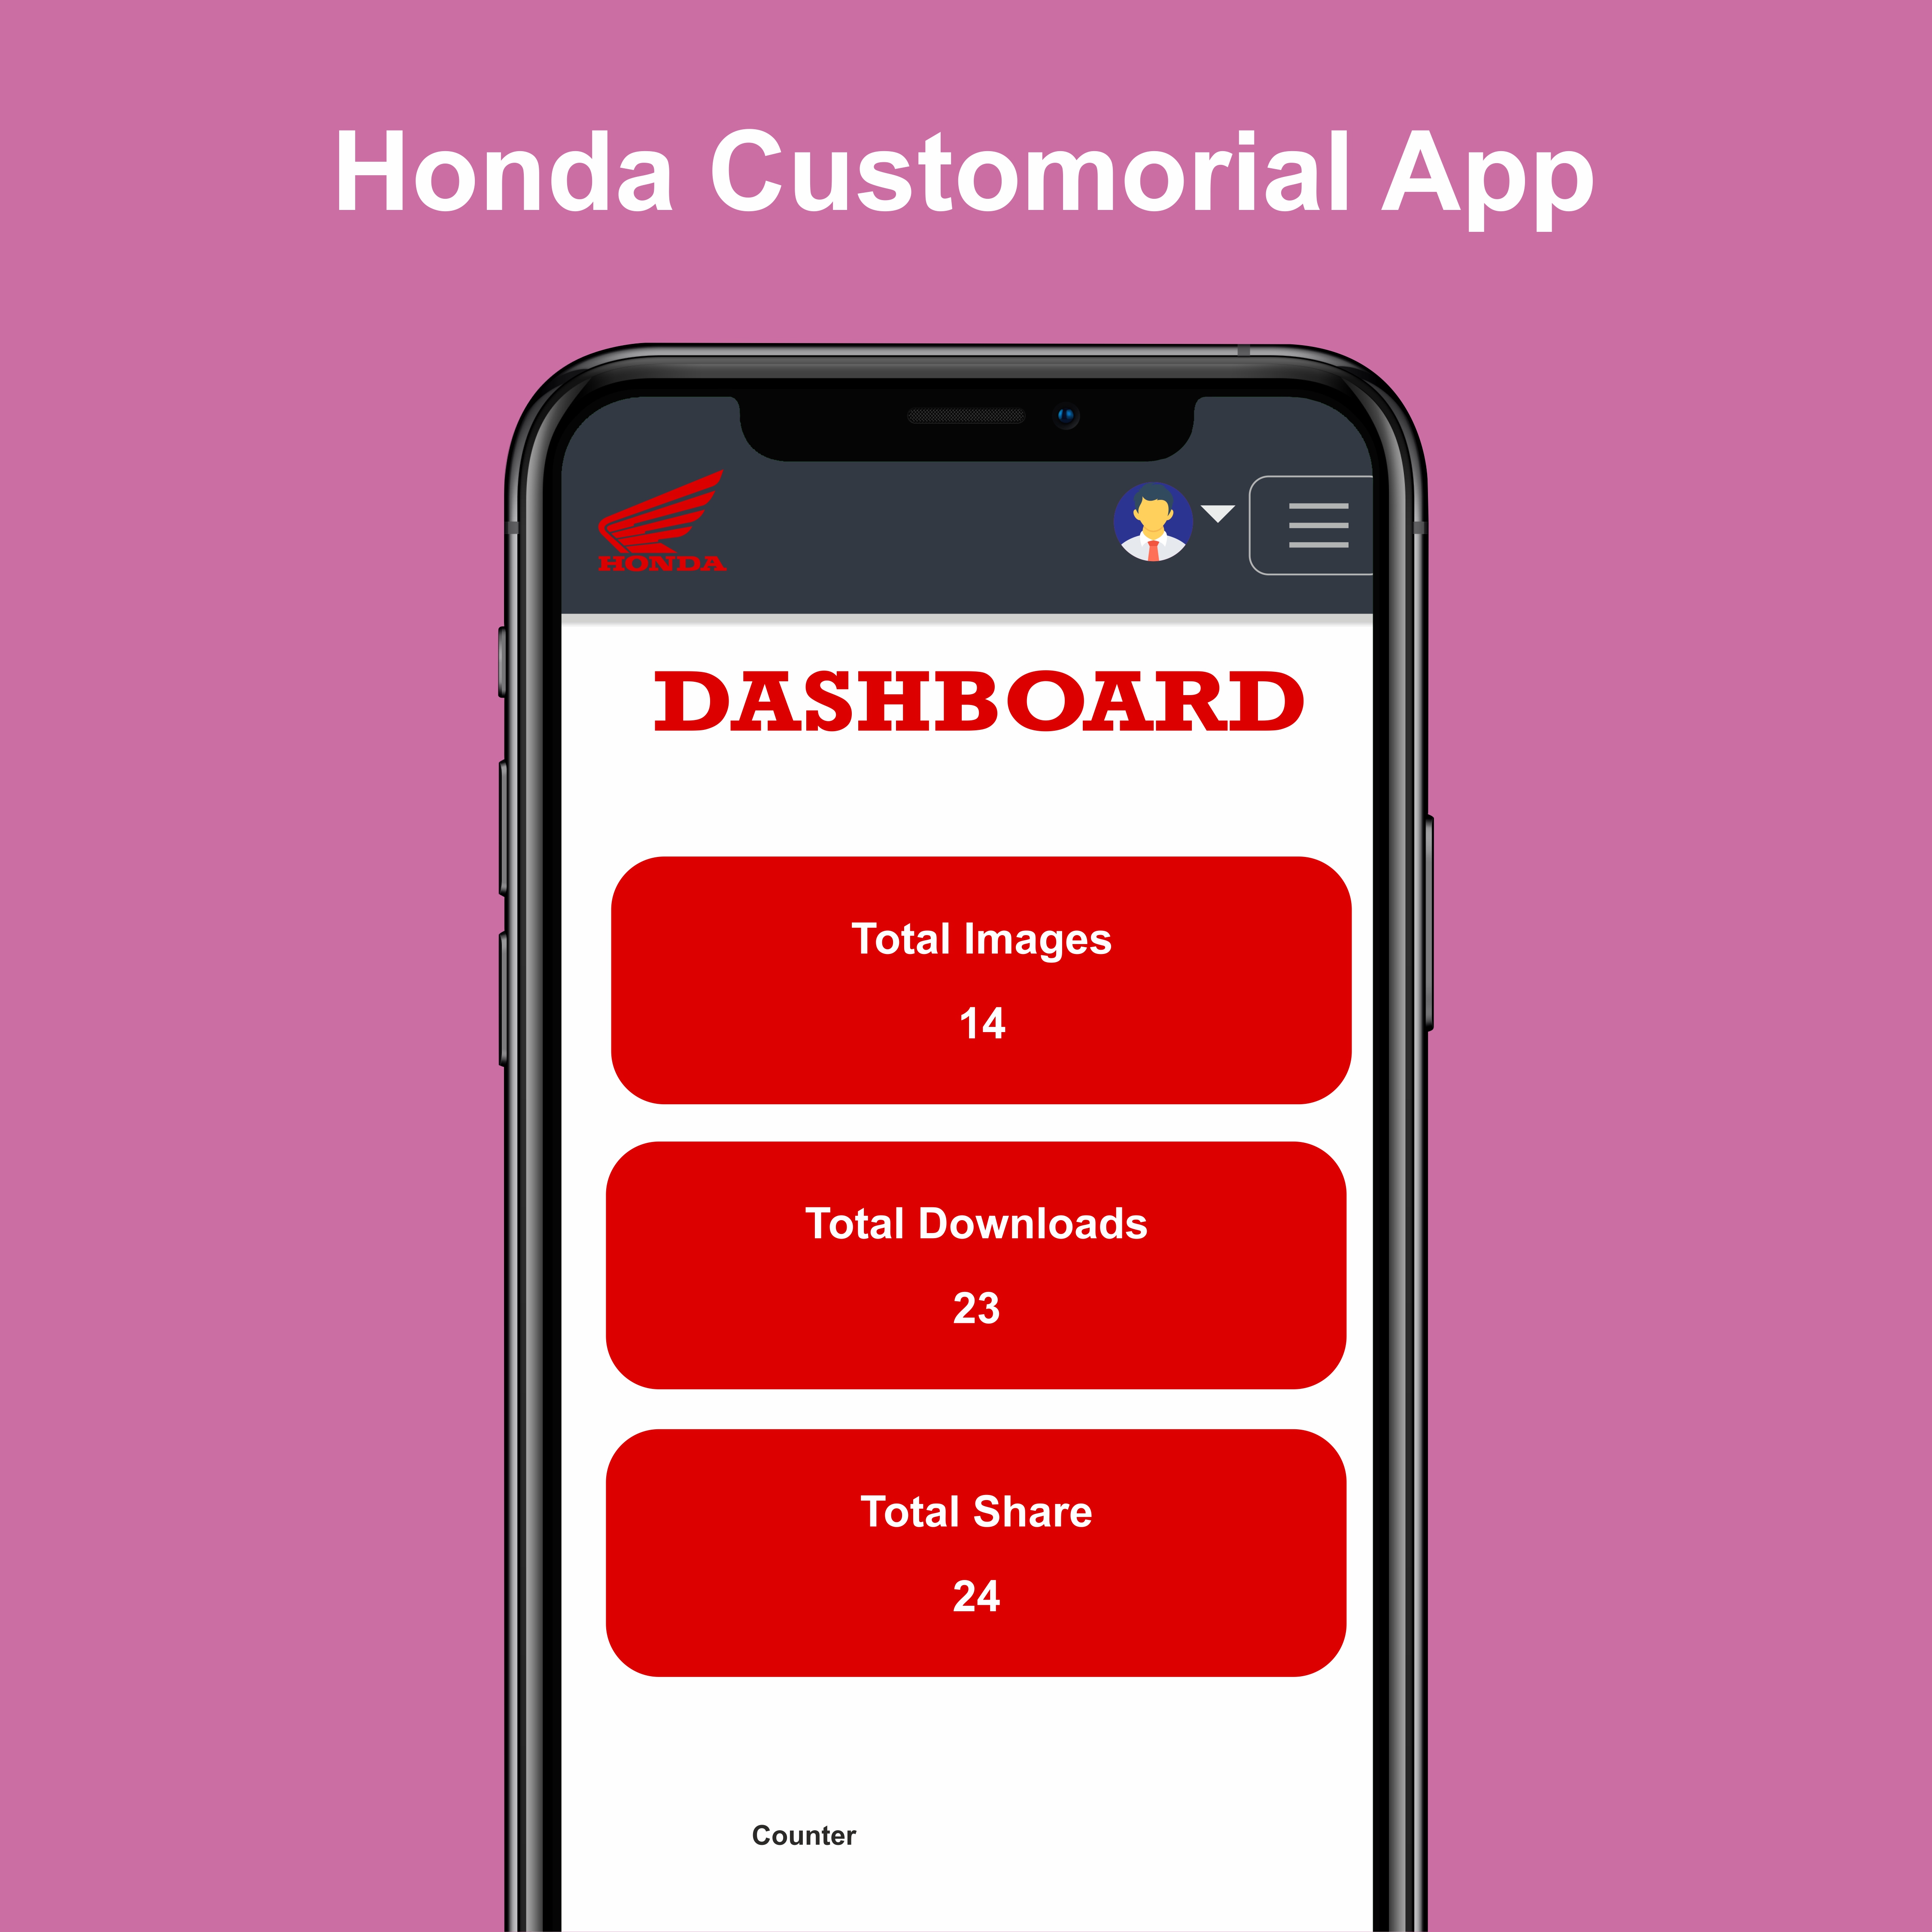 Honda Customorial